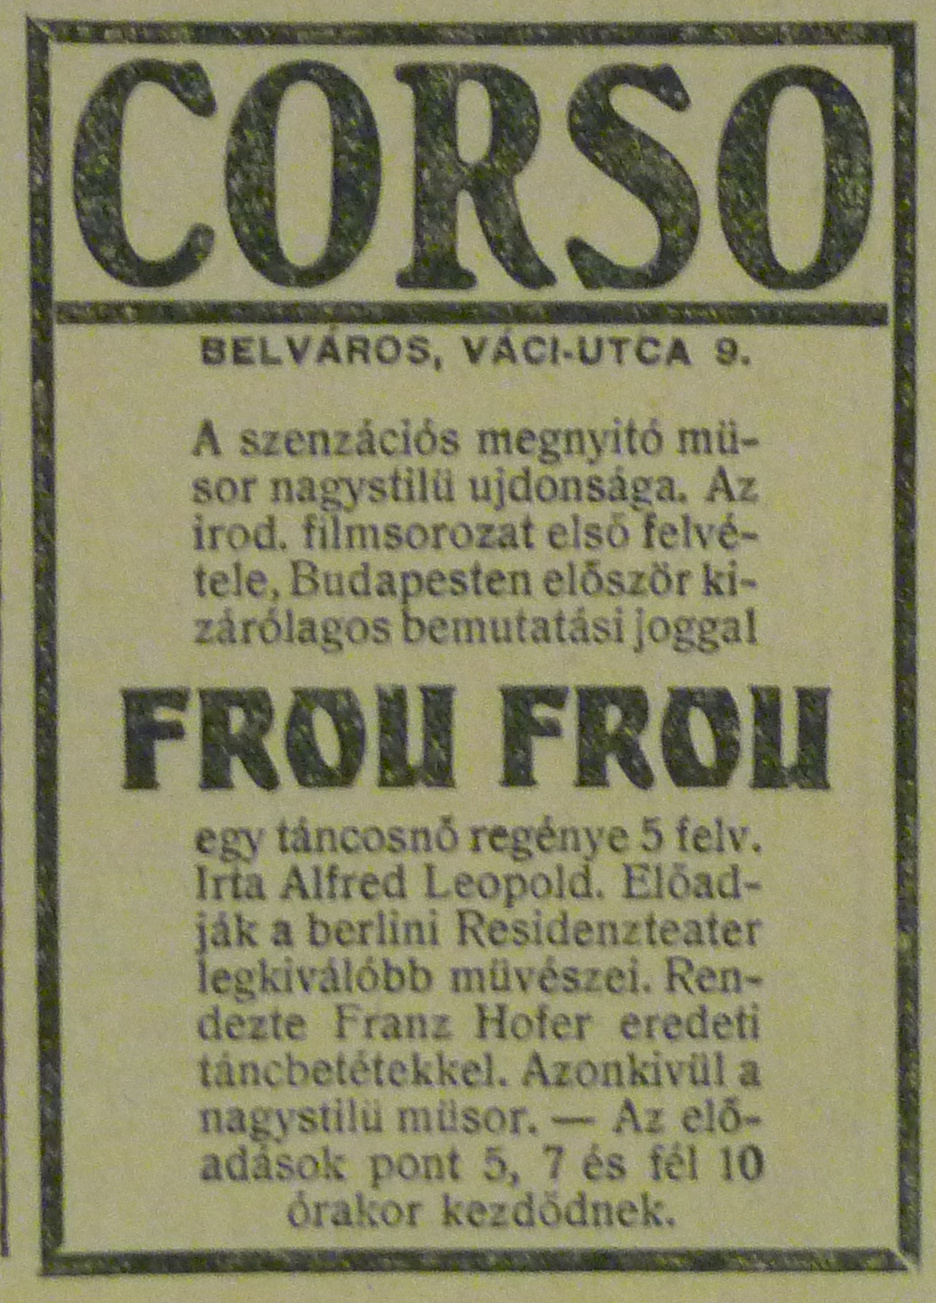 VaciUtca9-CorsoMozi-1913Szeptember-AzEstHidetes